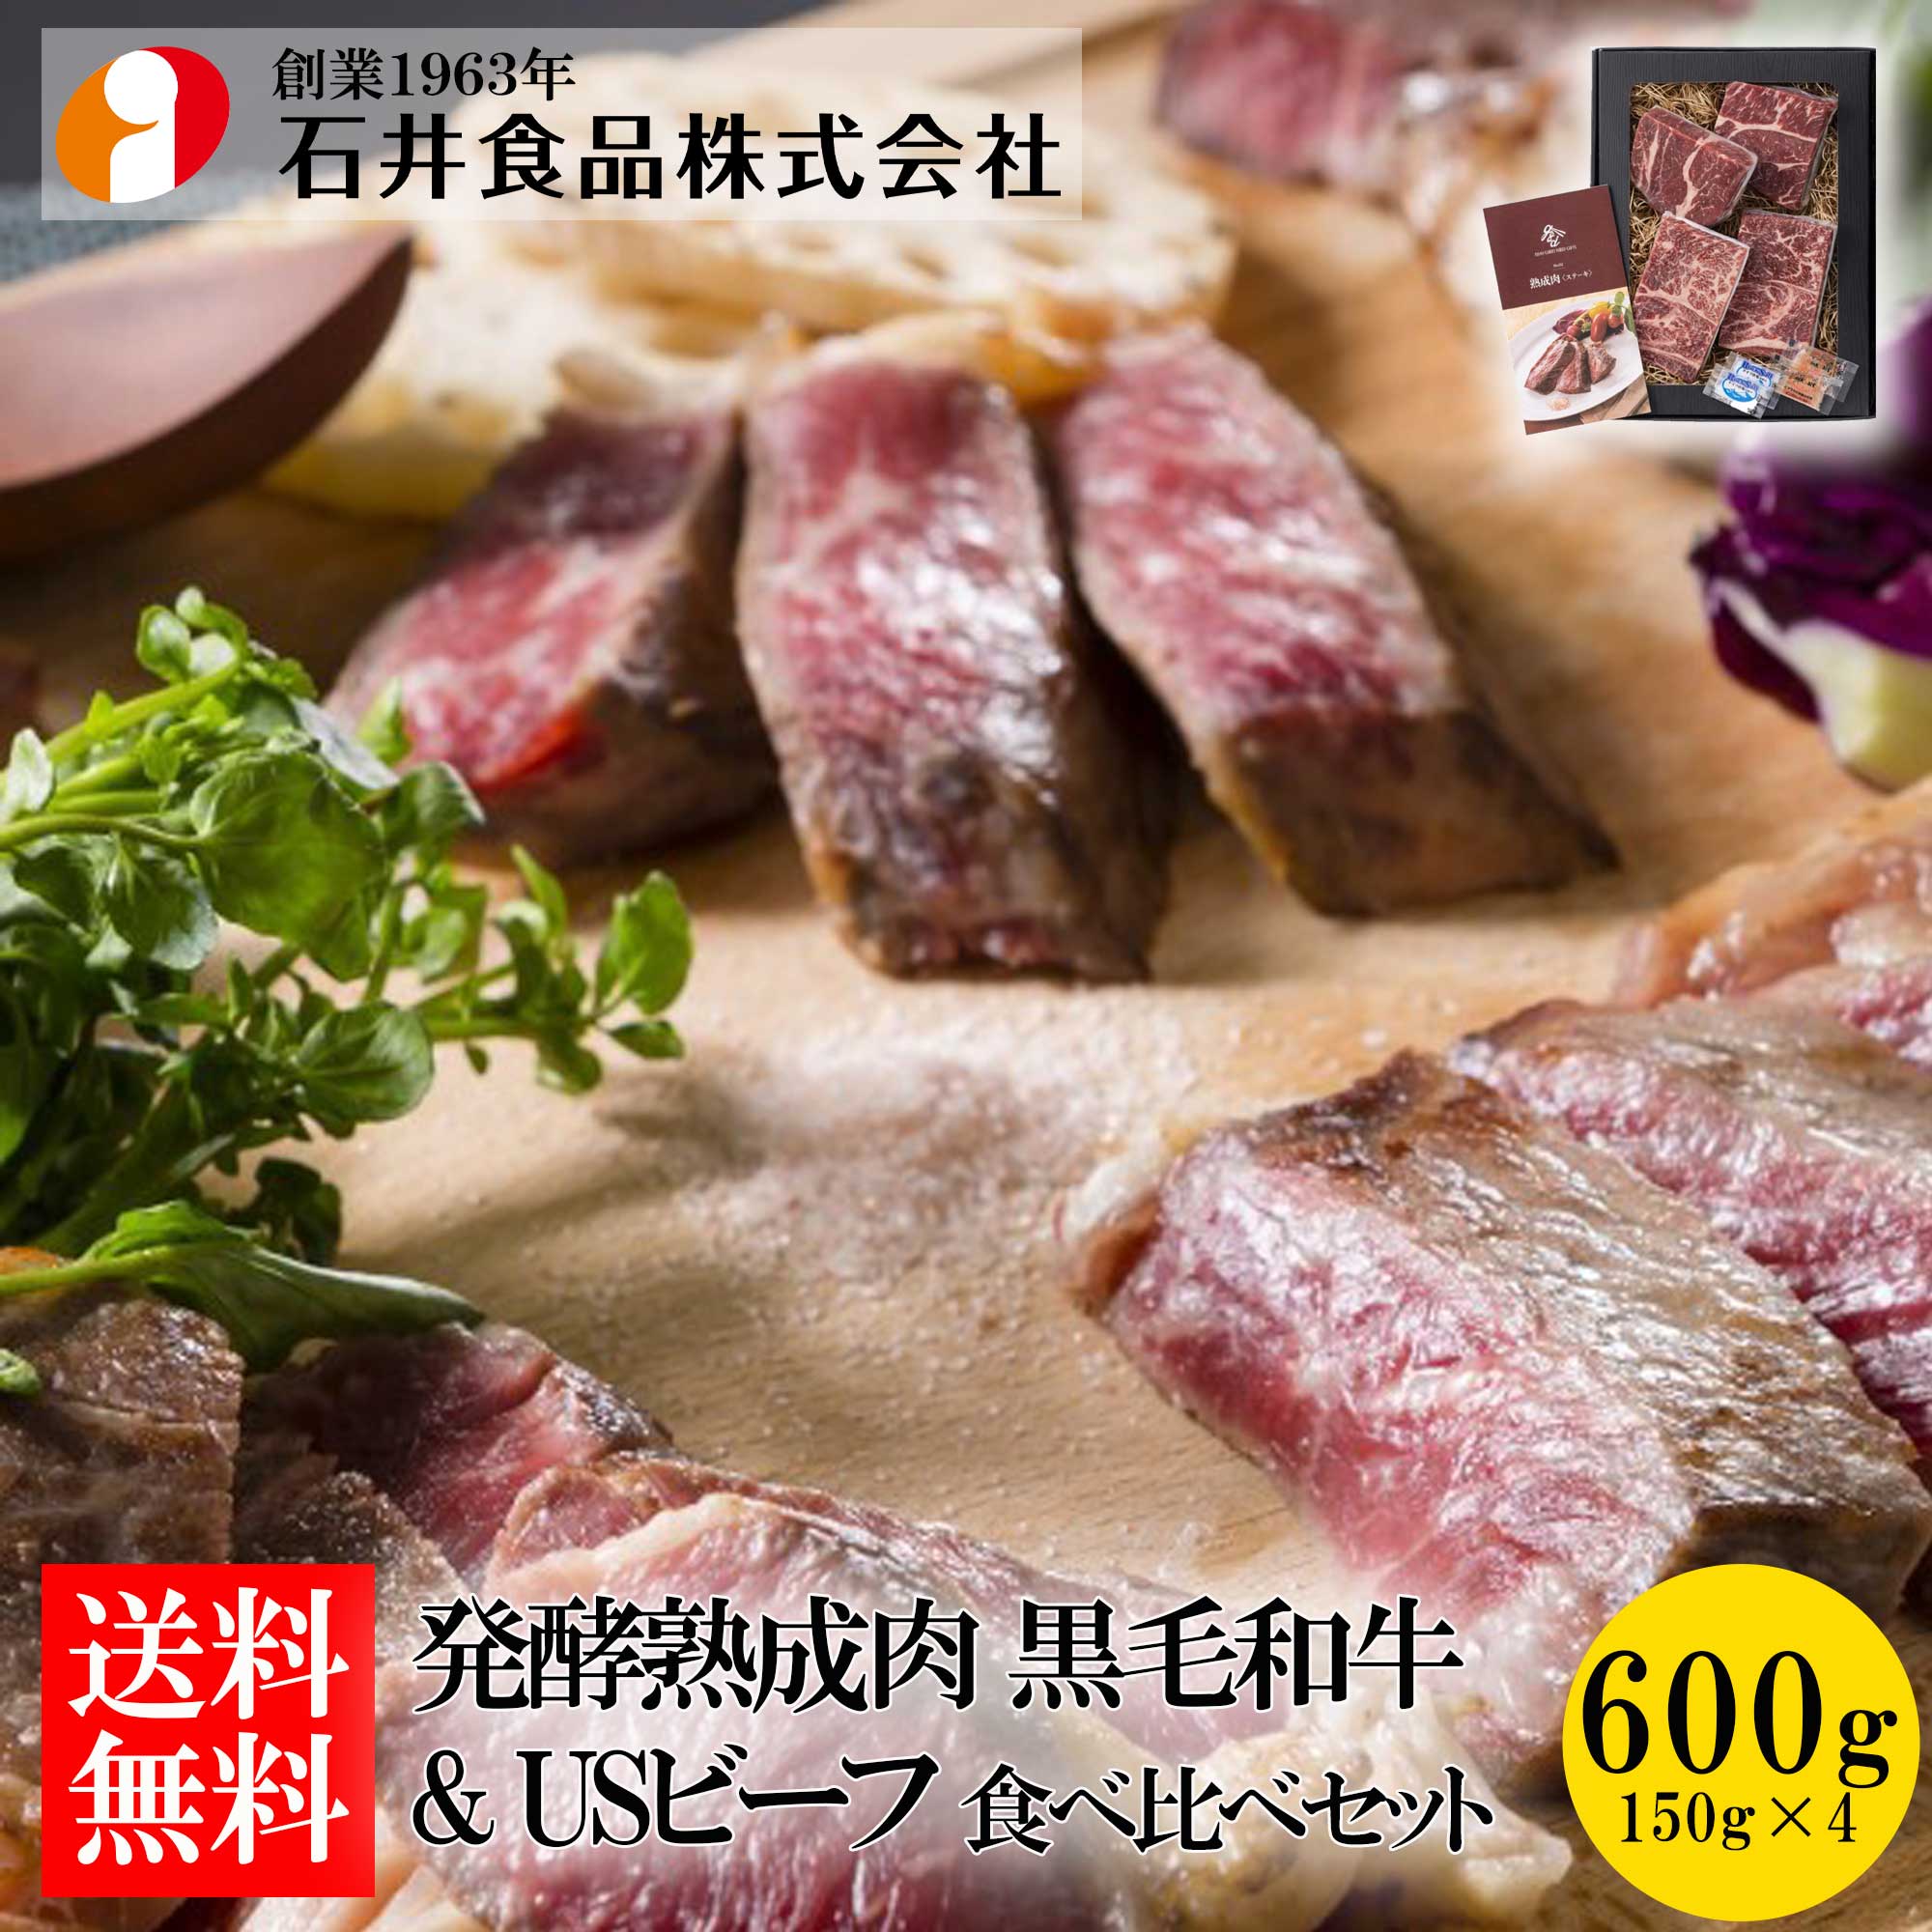 【石井食品】 発酵熟成肉 黒毛和牛とUSビーフ食べ比べセット